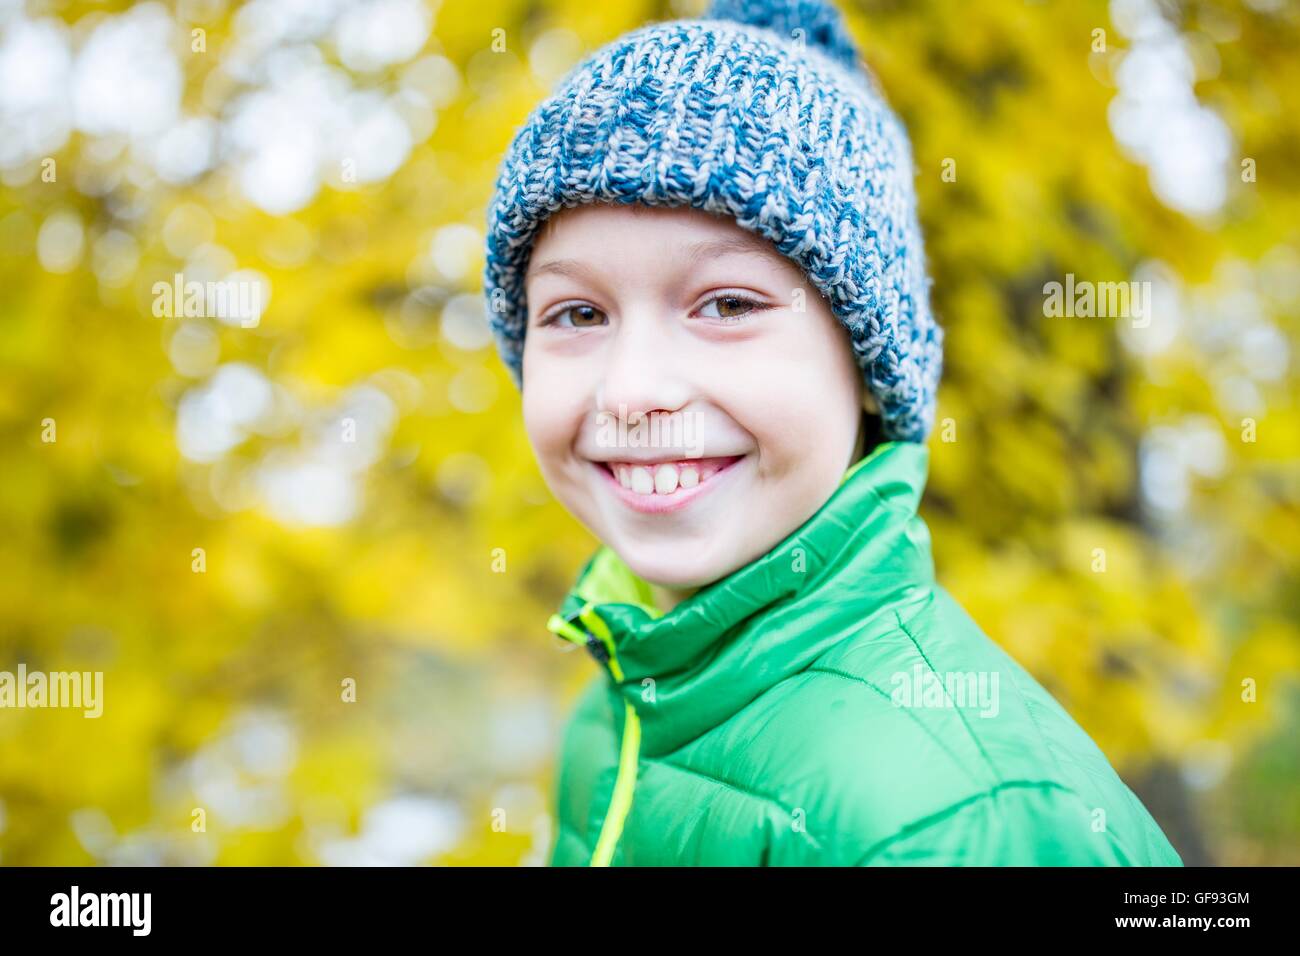 Parution du modèle. Boy wearing woolly hat and smiling, close-up, portrait. Banque D'Images